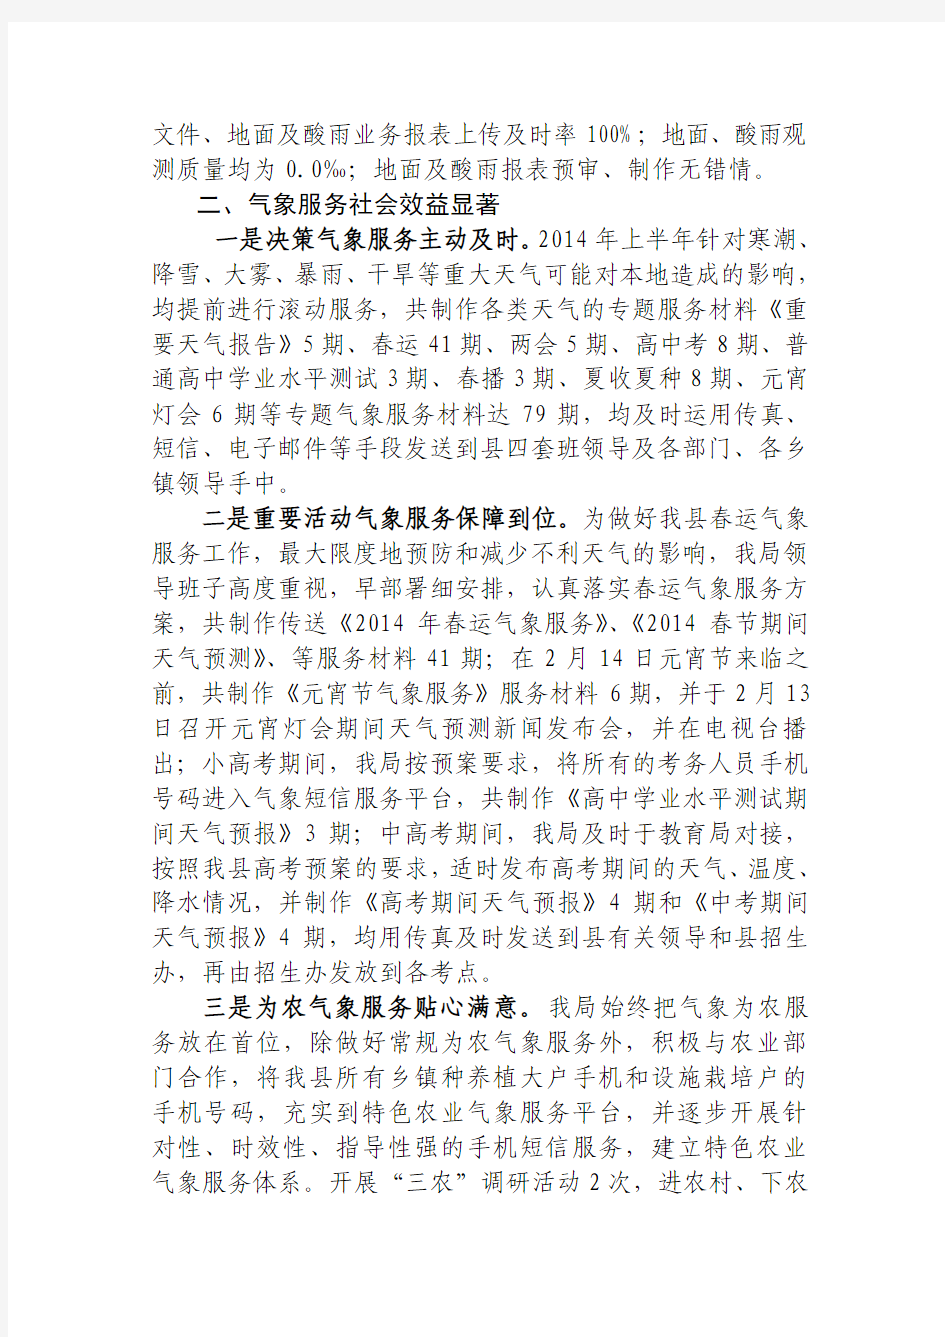 灌云县气象局2014年上半年工作总结和下半年工作计划